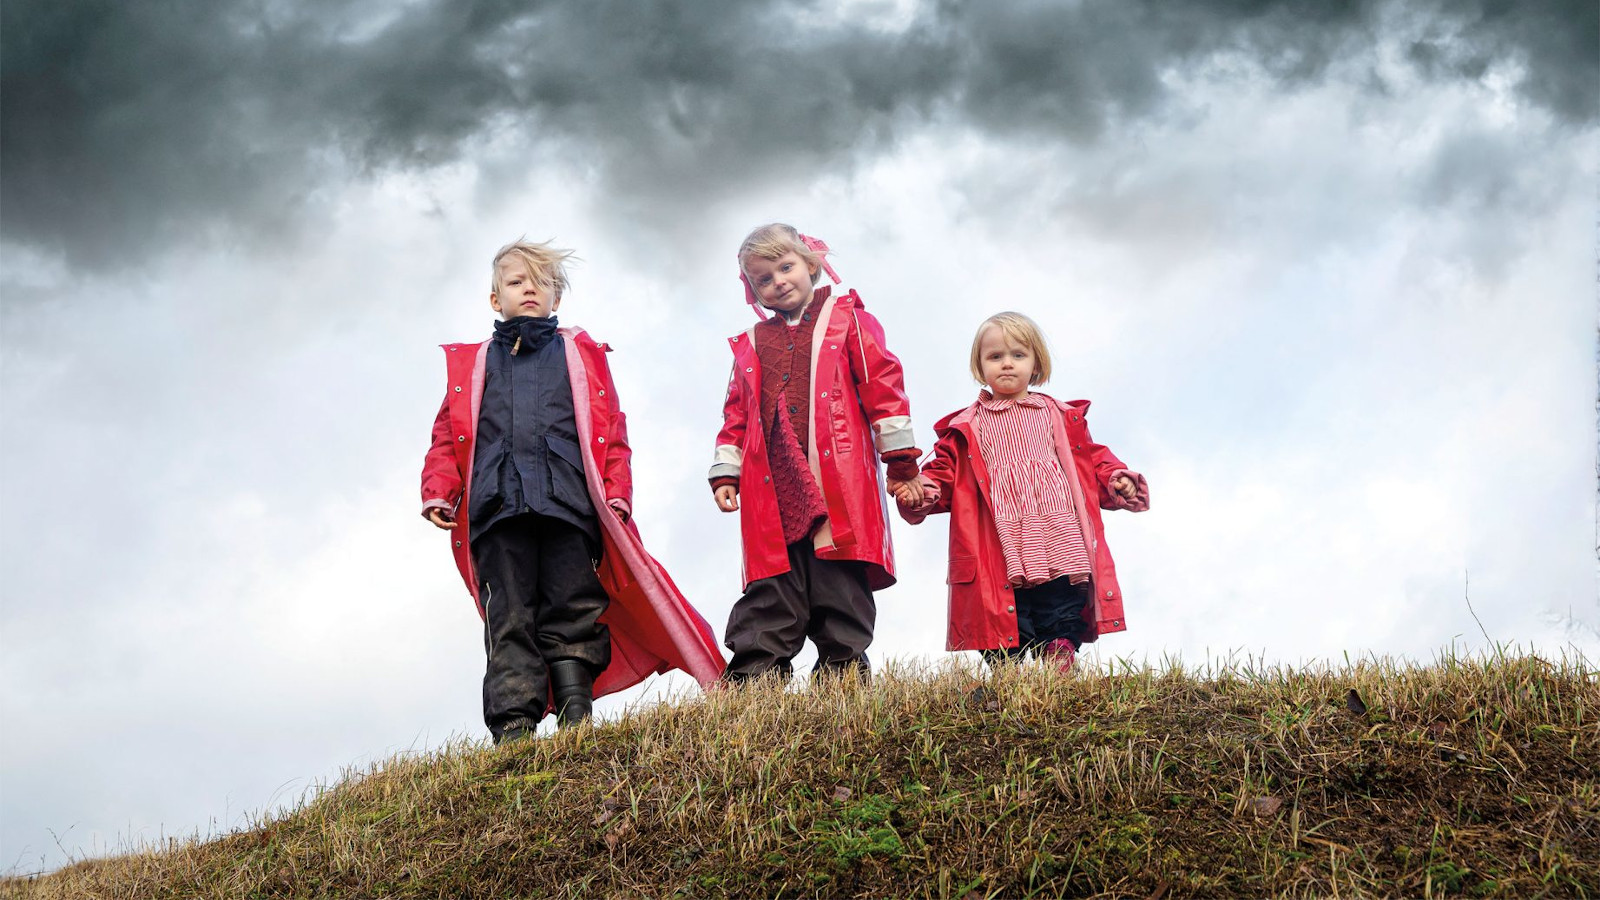 Kuvassa on kolme lasta kumpareen päällä ja heillä on päällään punaiset takit.